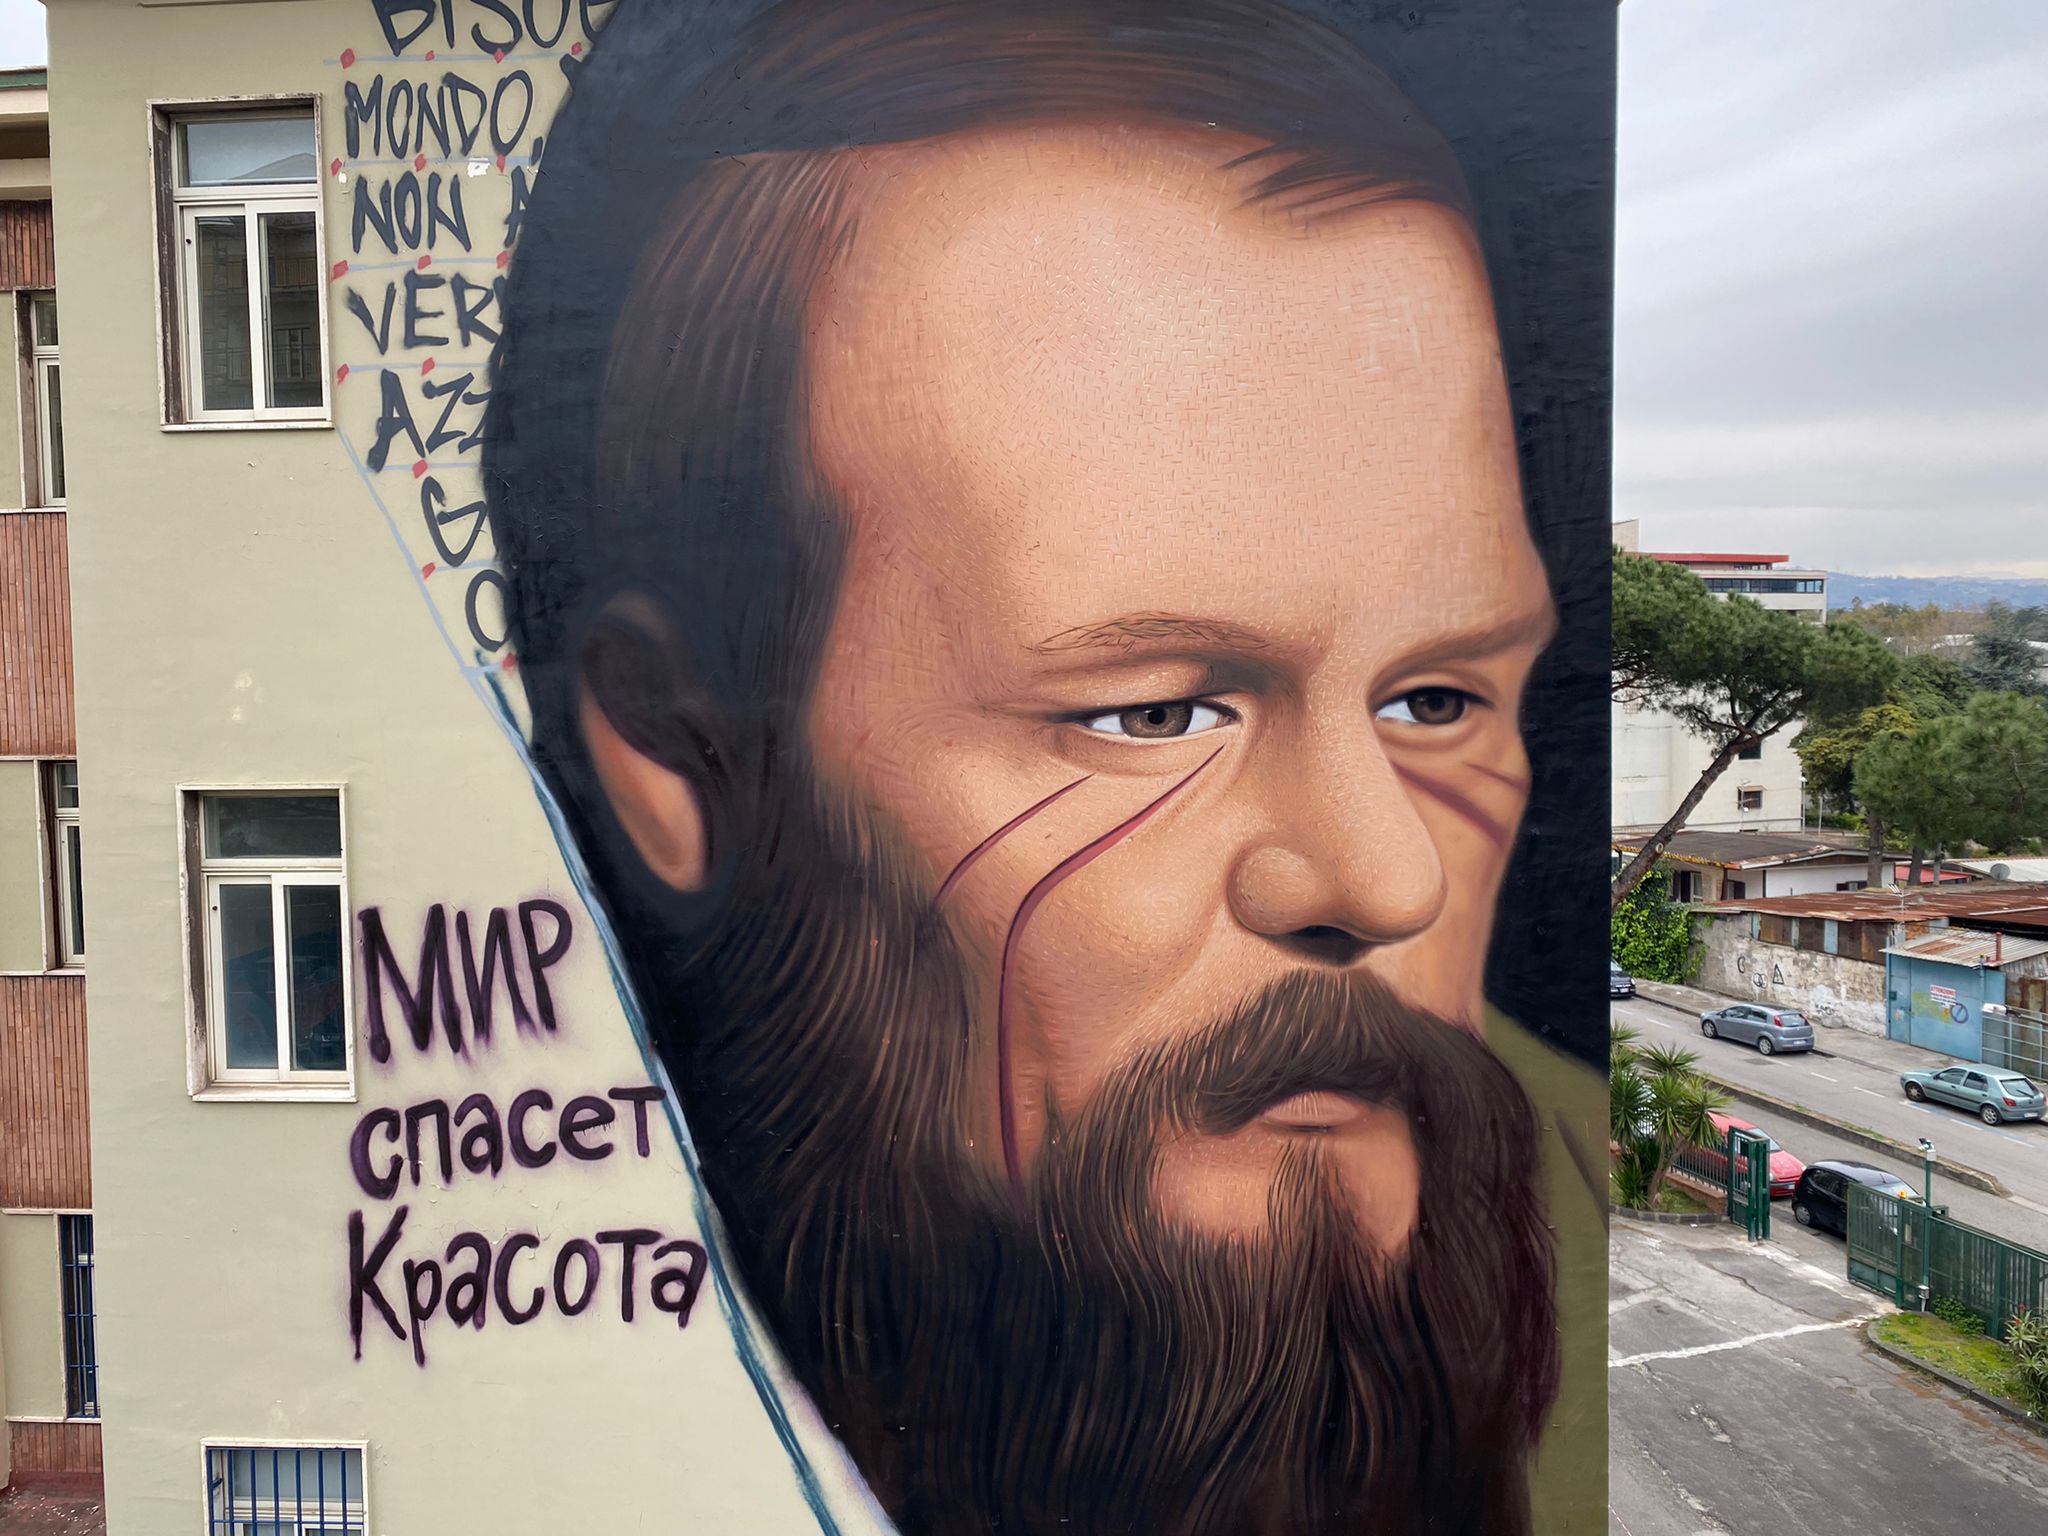 Putin si complimenta con l'artista napoletano Jorit: "Il tuo murales su Dostoevskij dà speranza"